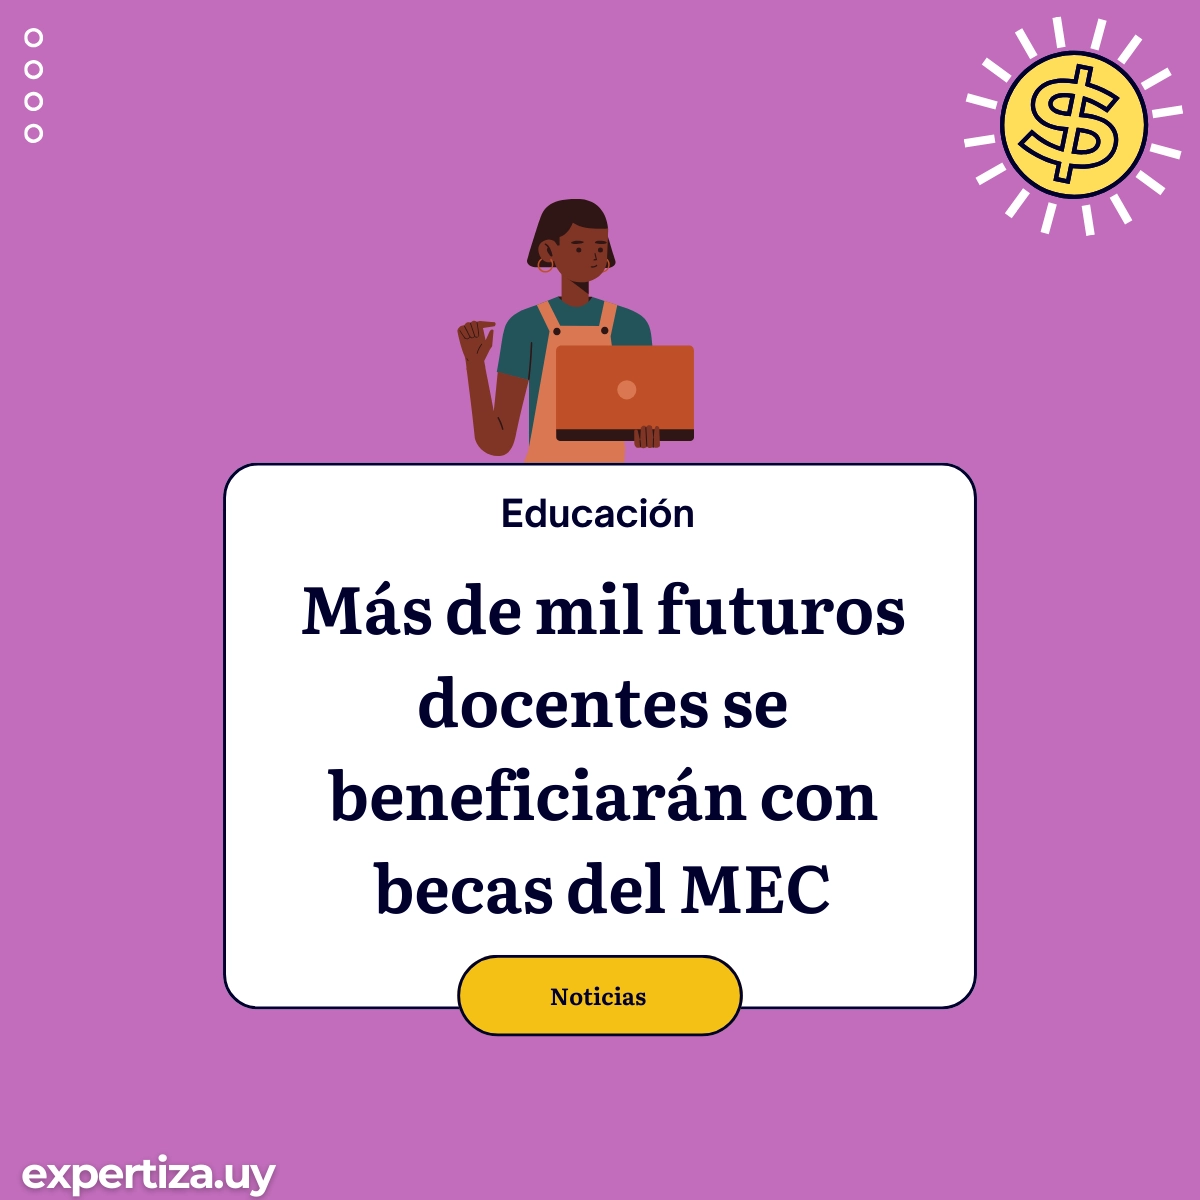 Más de mil futuros docentes se beneficiarán con becas del MEC.